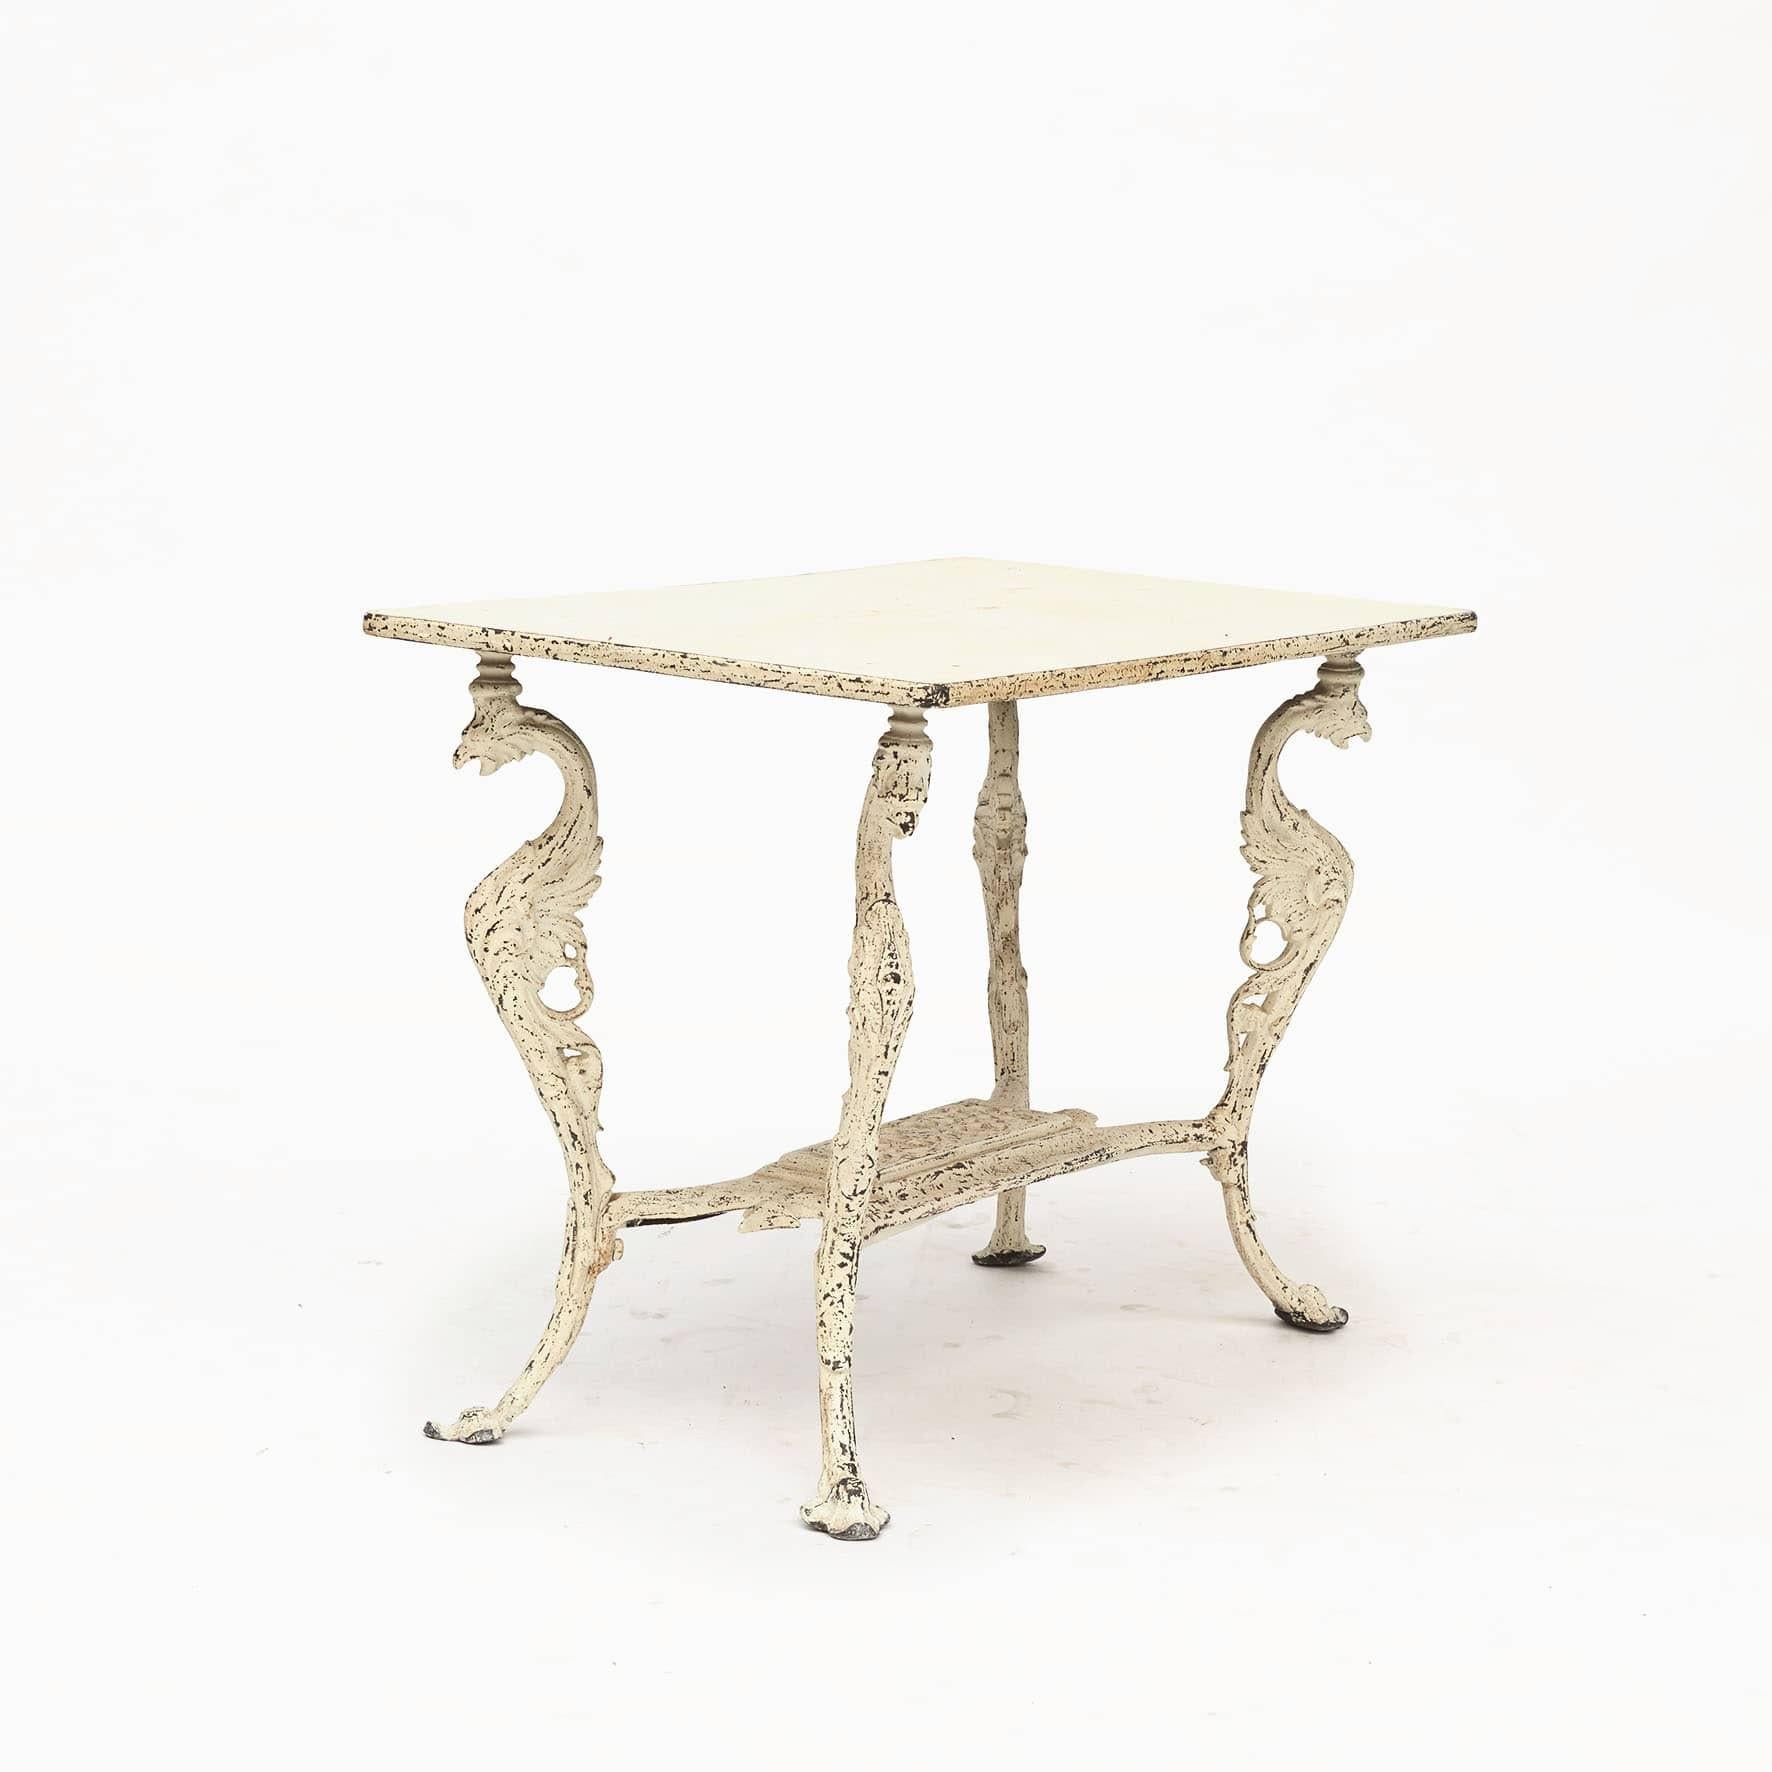 Dekorativer schwedischer Gusseisen-Gartentisch. C 1860-1880
Bemalte Beine in Form von Greifen.
In dekorativem Stil und hoher Qualität hergestellt.

